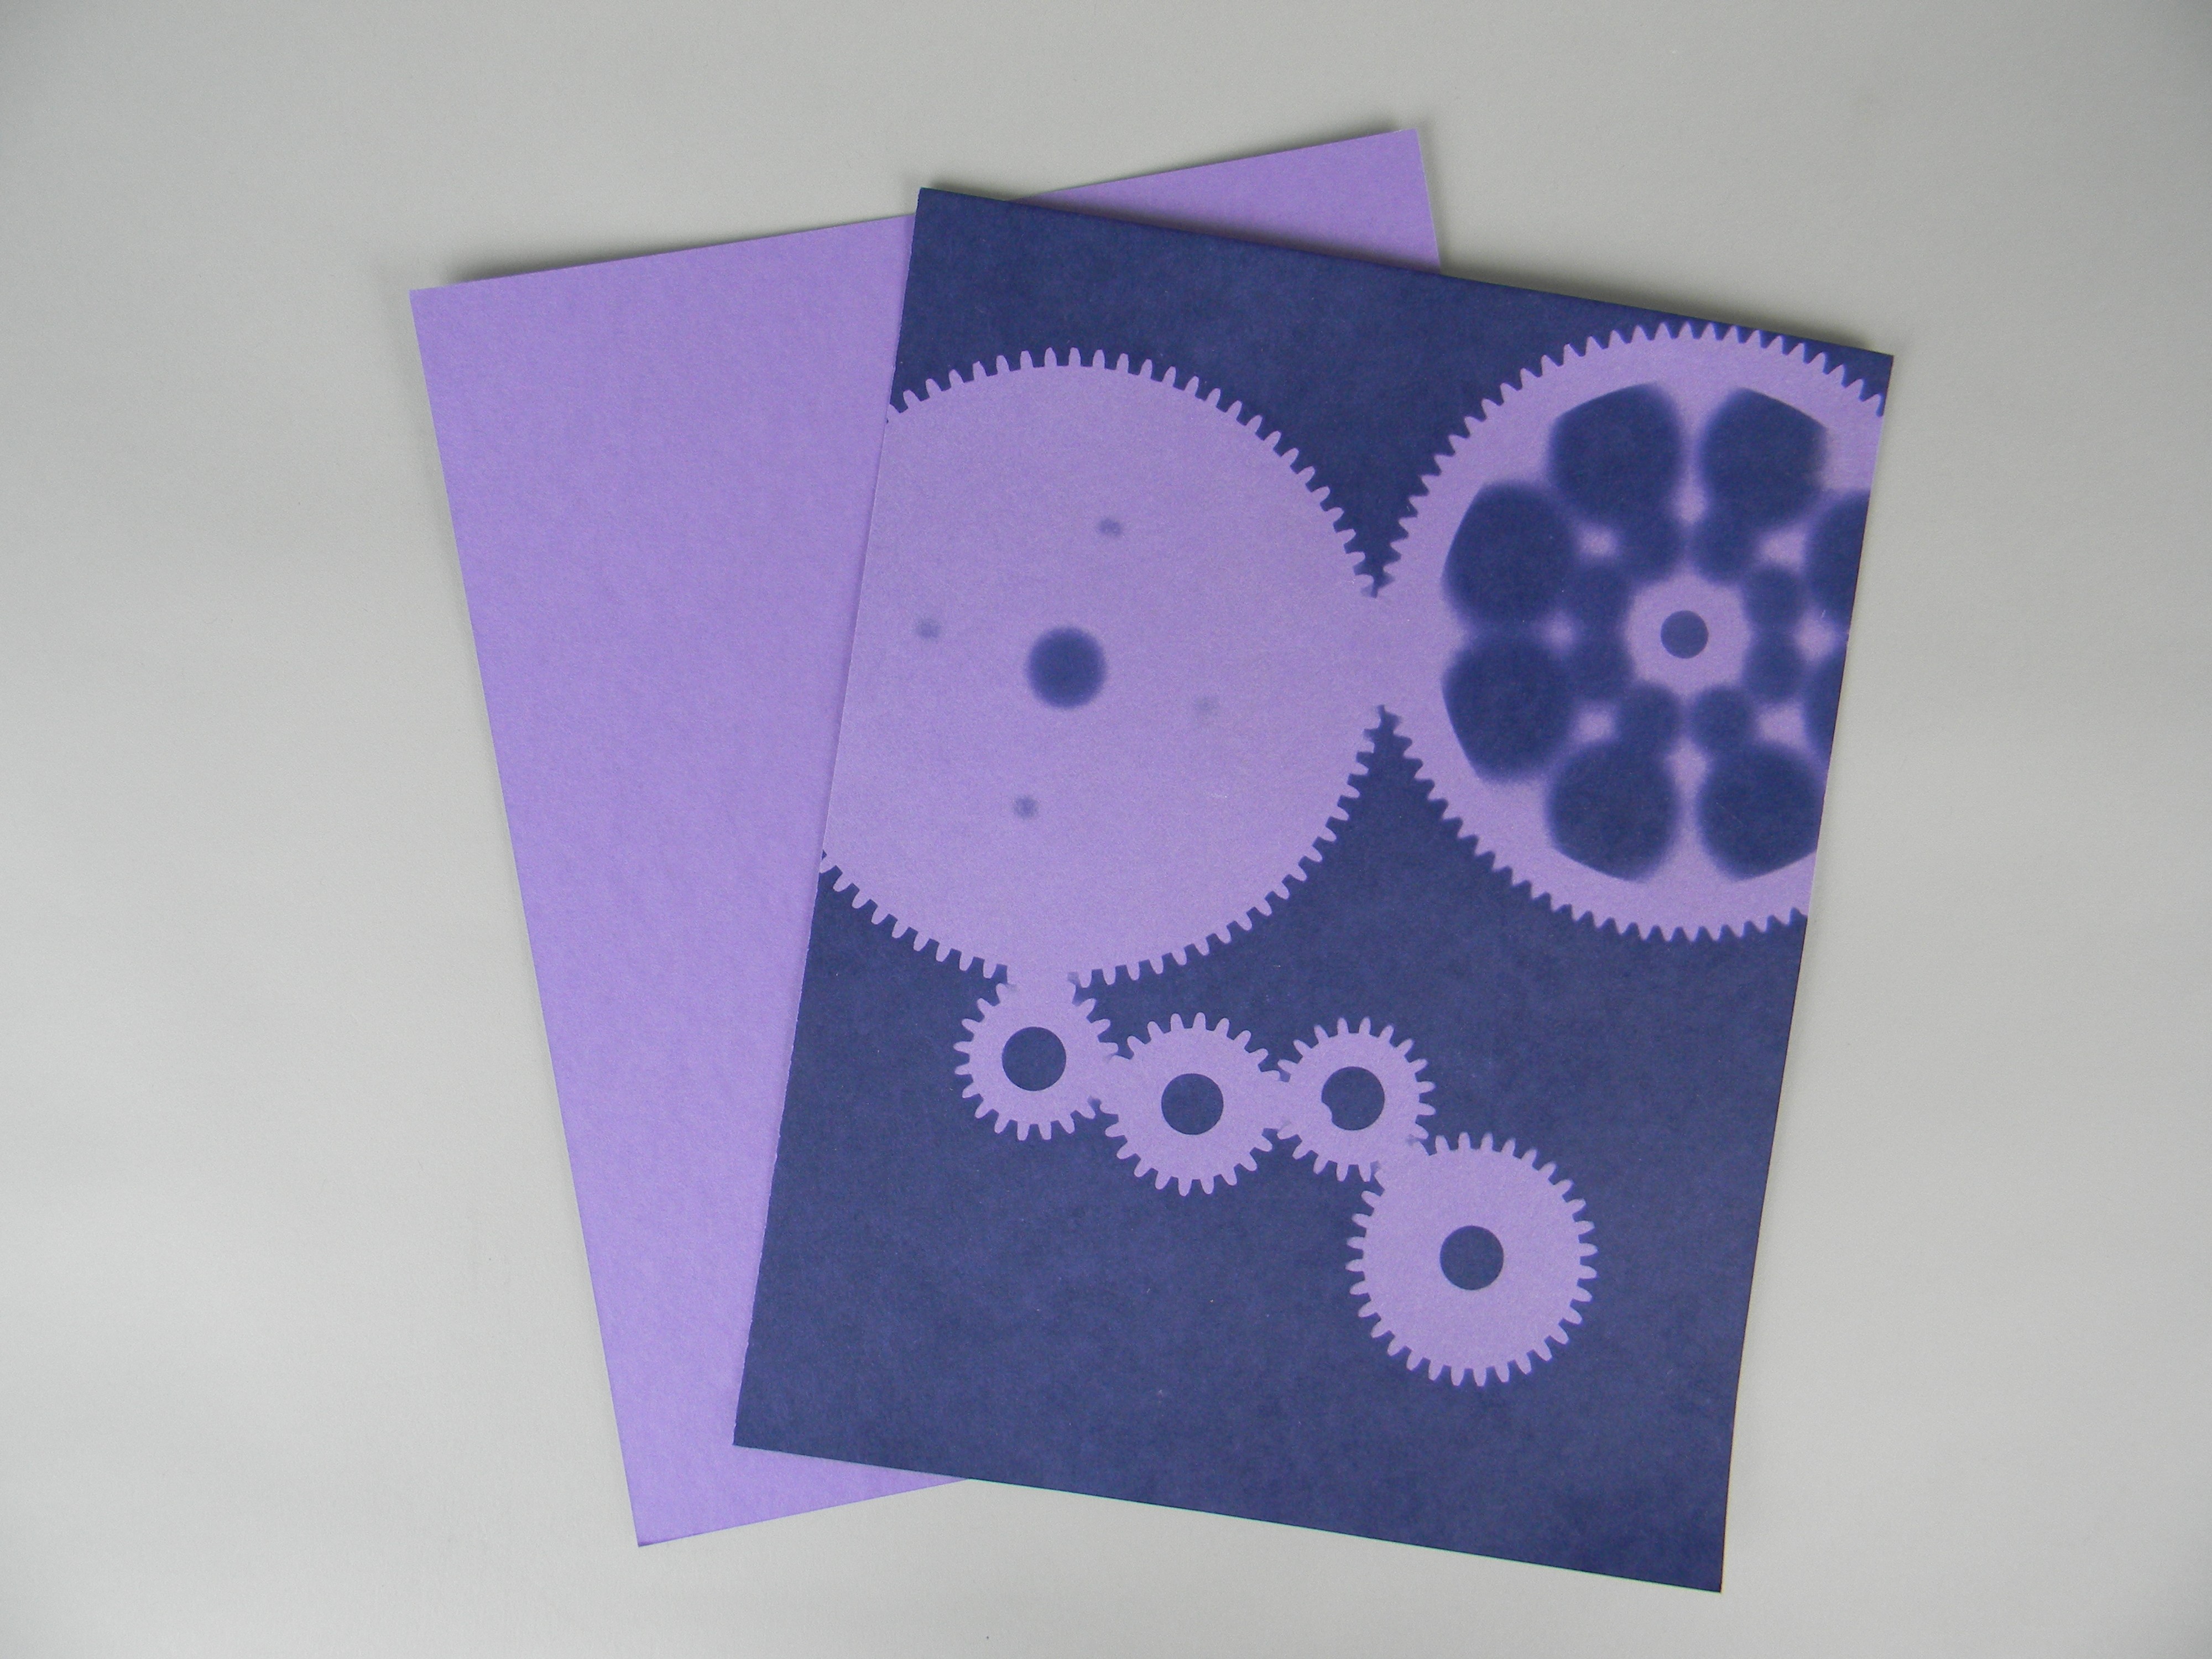 8" X 10" cyanotype paper (violet)